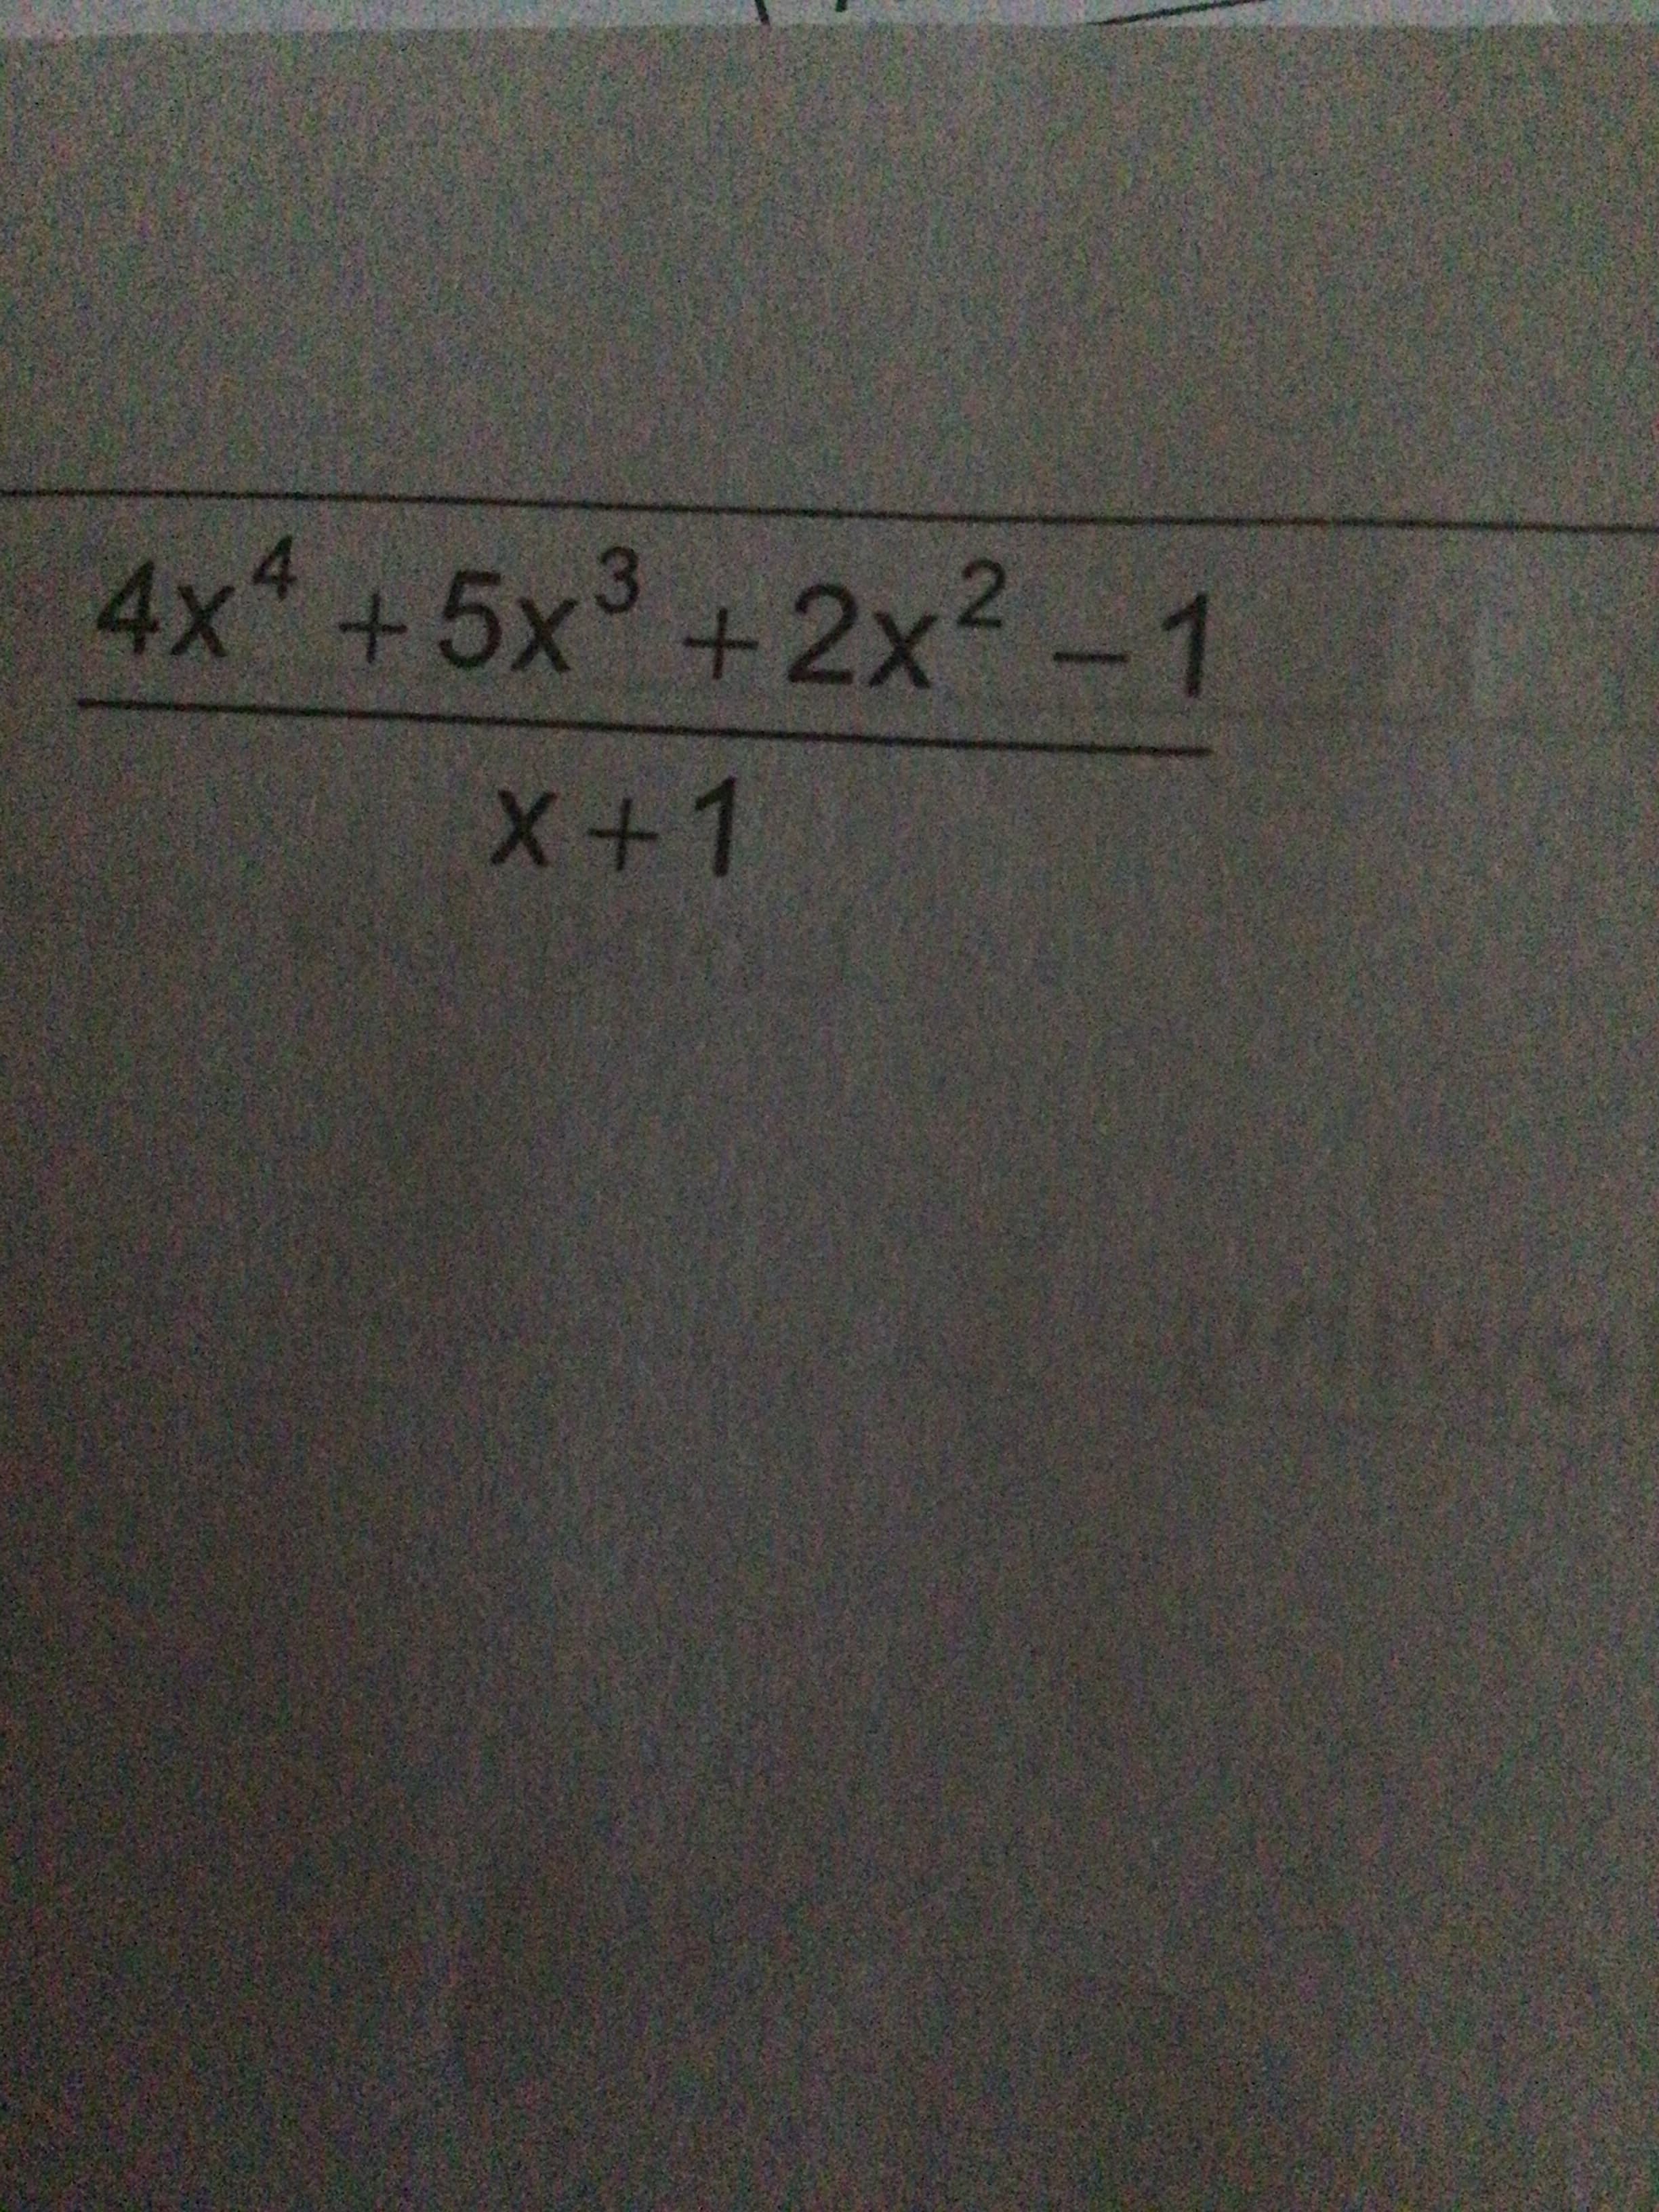 4x*+5x°+2x² -1
3
+1
